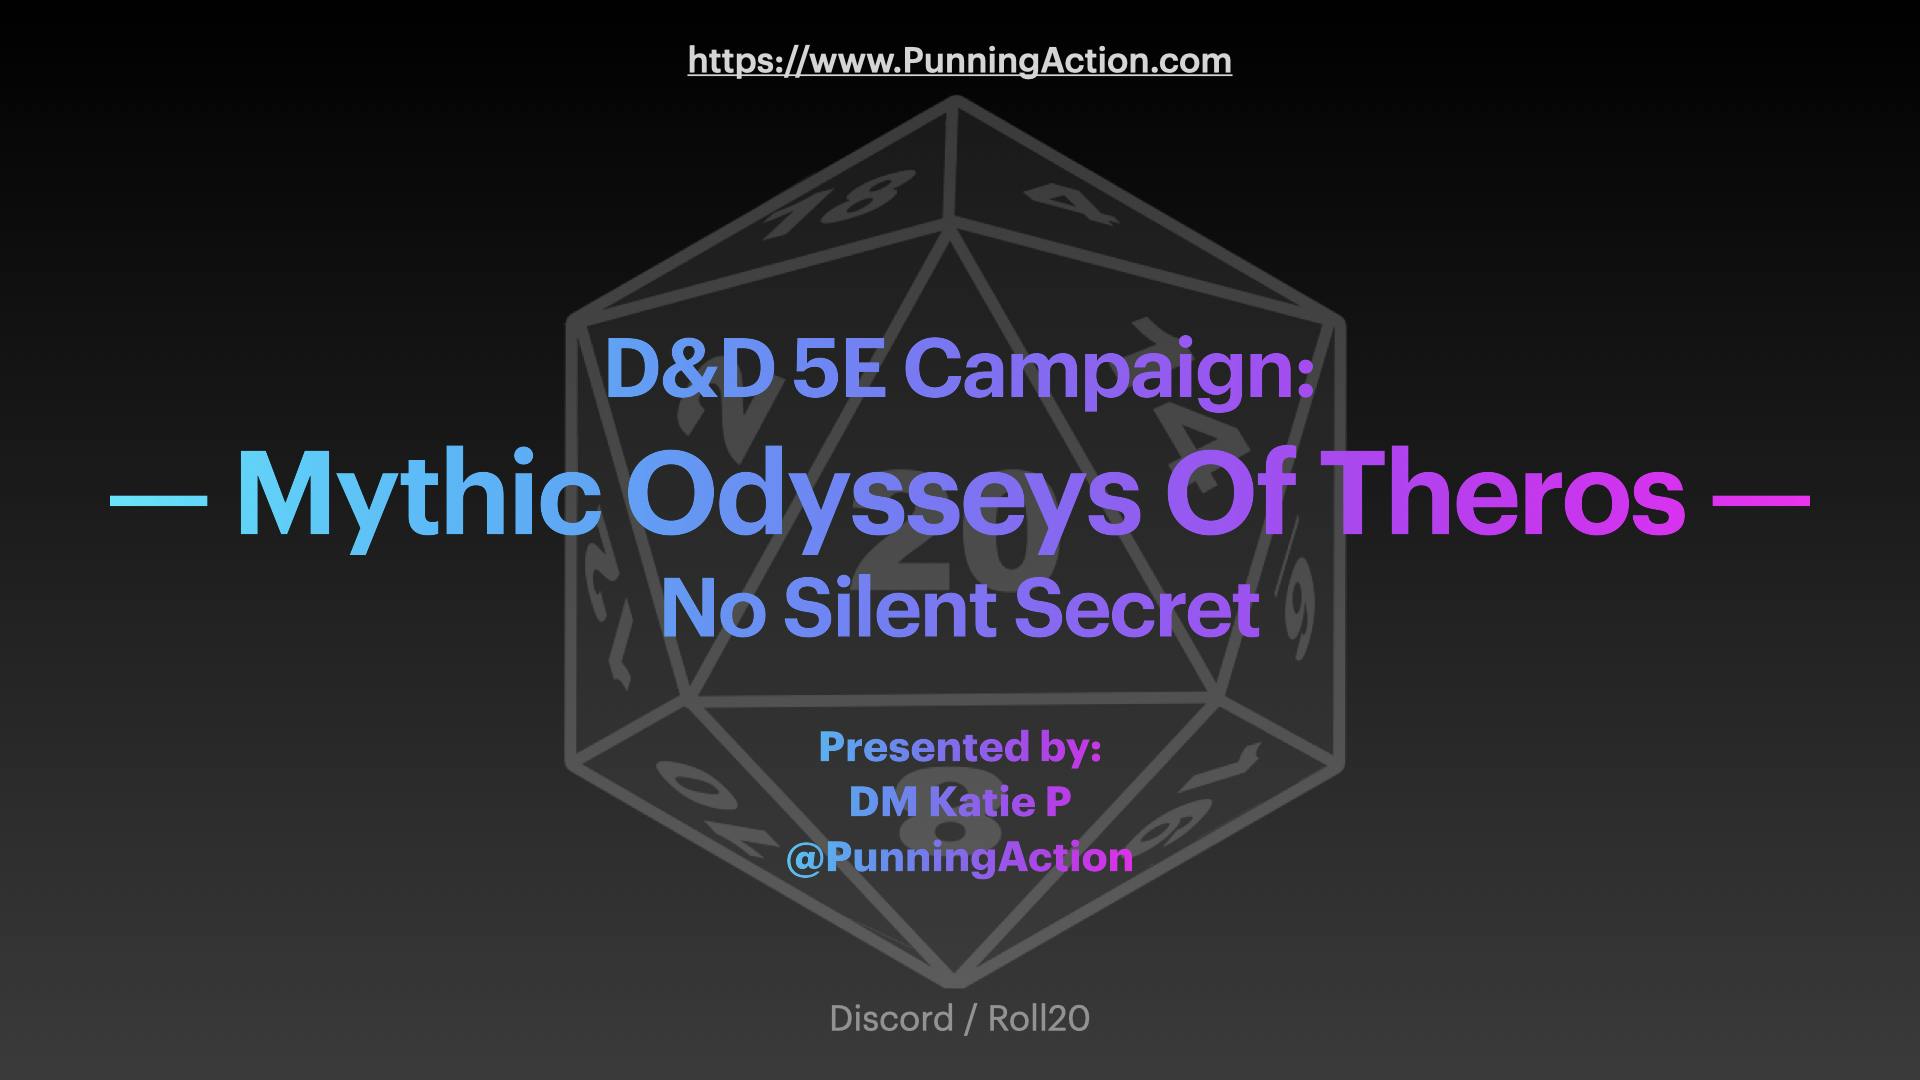 Mythic Odysseys of Theros: No Silent Secret